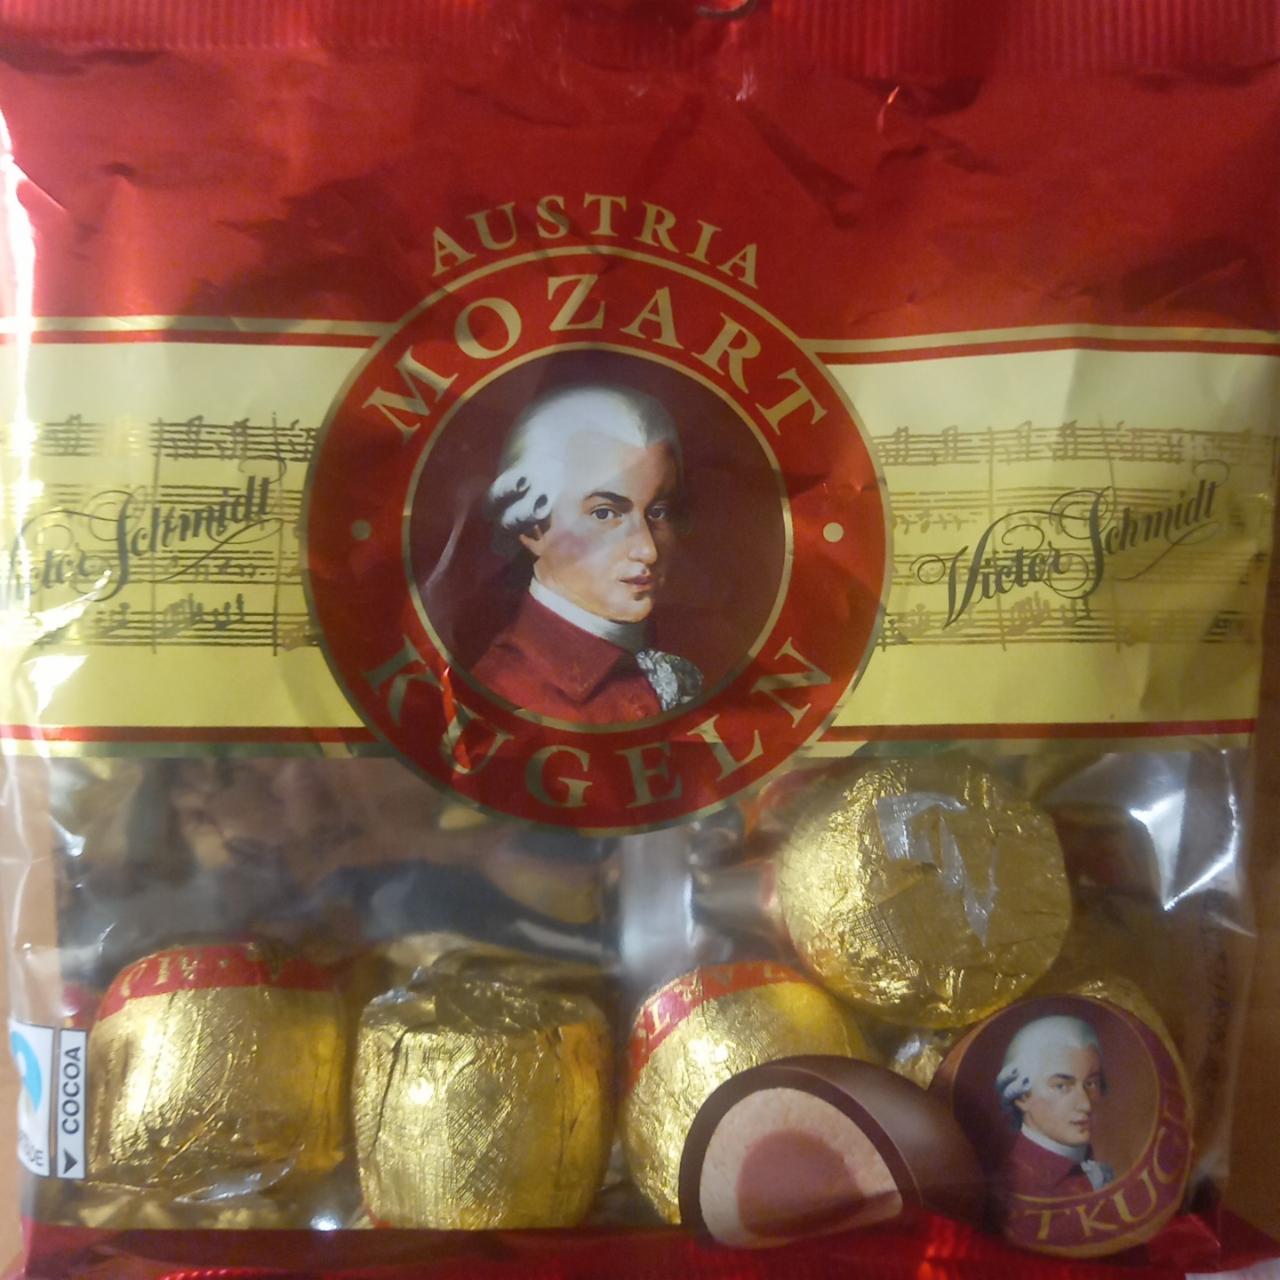 Képek - Mozart Kugeln praliné, marcipánnal és mogyorókrémmel töltve, csokoládéval bevonva 297 g